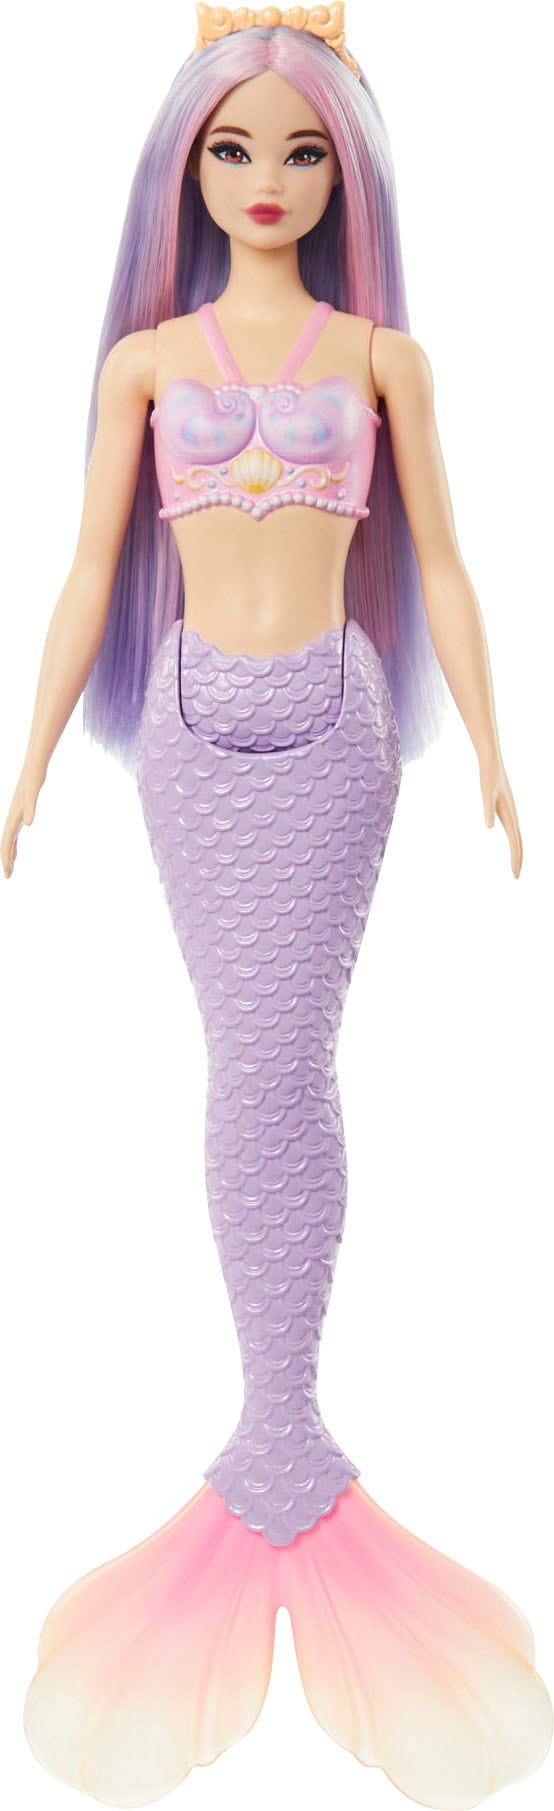 Meerjungfrauenpuppe »Meerjungfrau«, mit lilafarbenem Haar